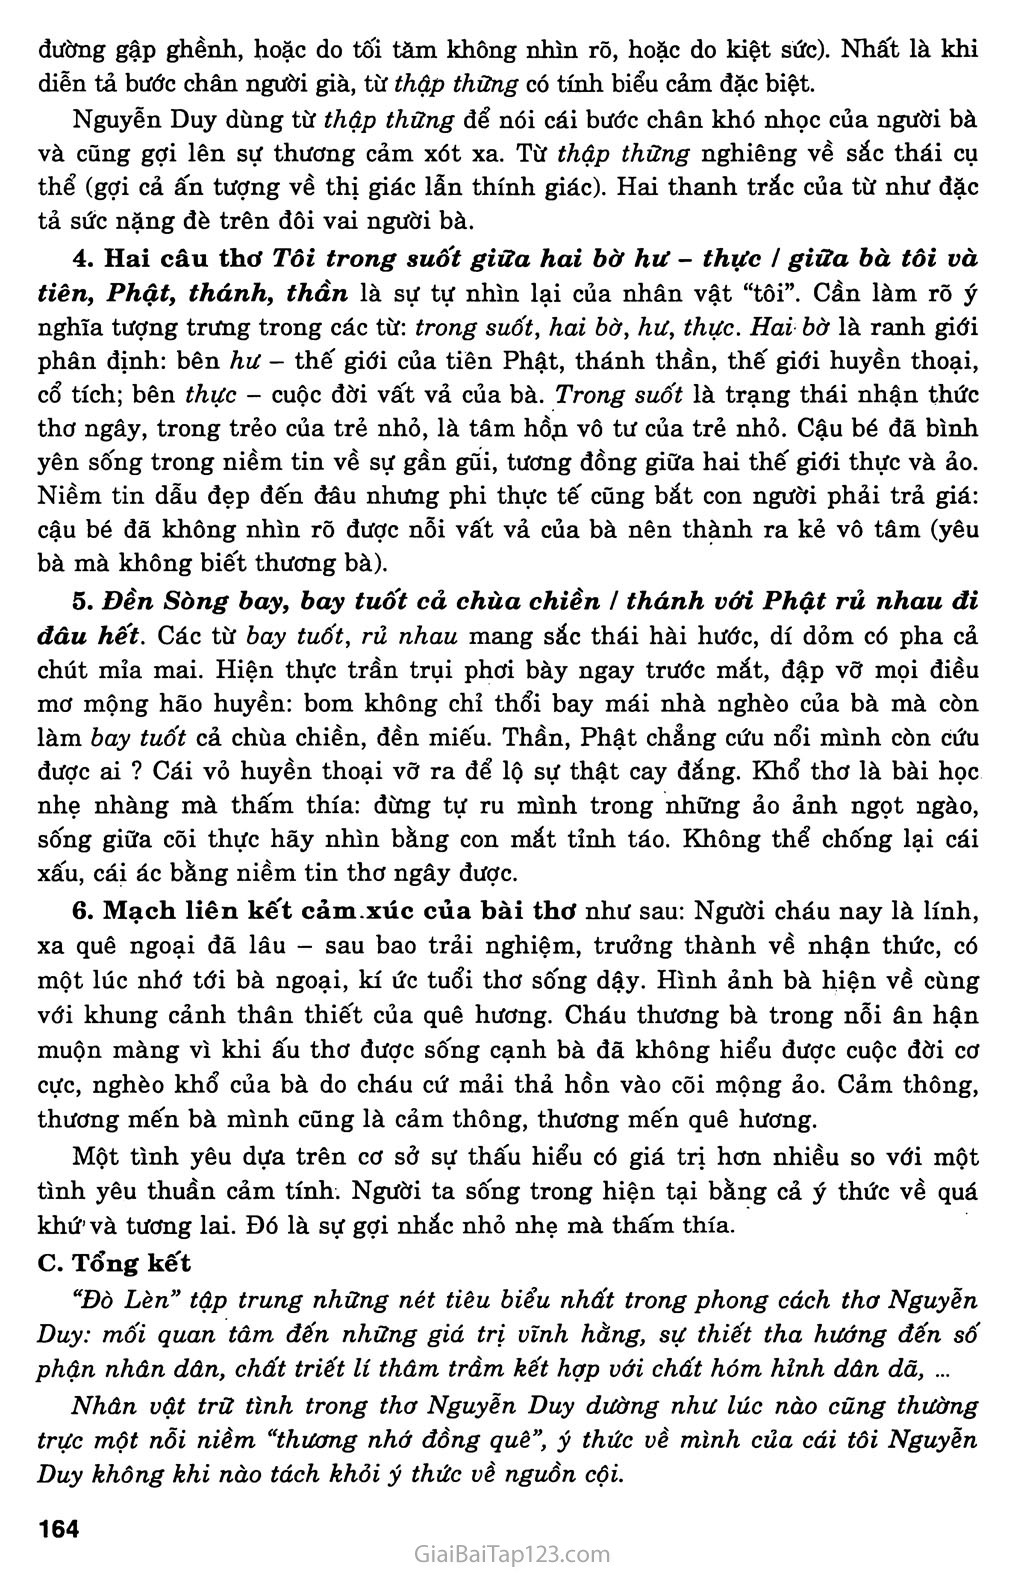 Đò Lèn (Nguyễn Duy, 1983) trang 2